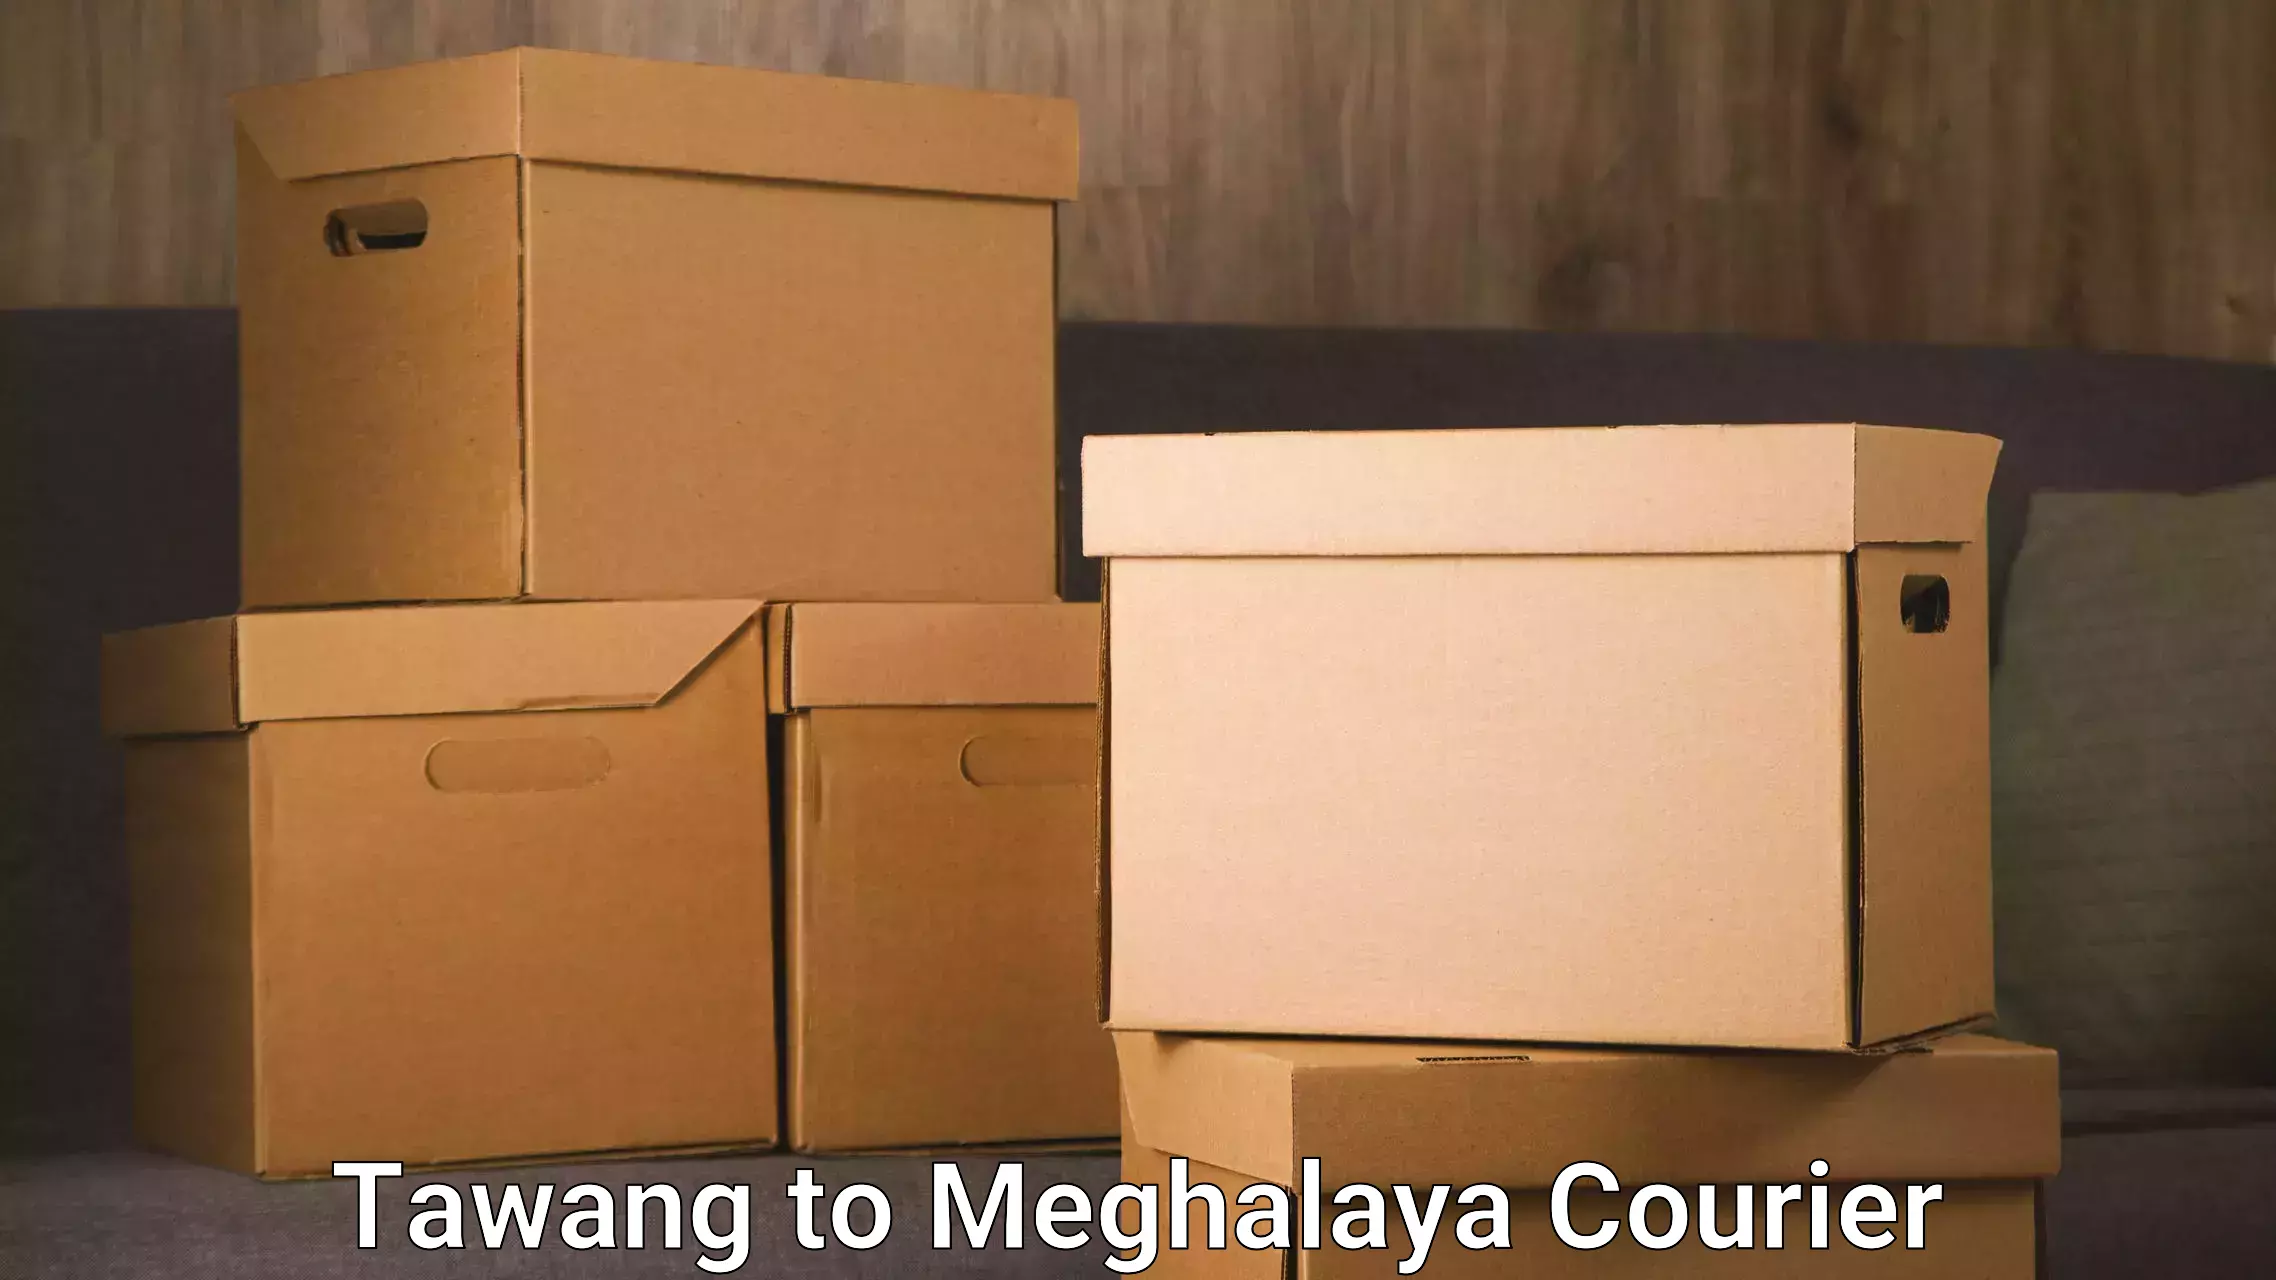 International parcel service Tawang to Meghalaya